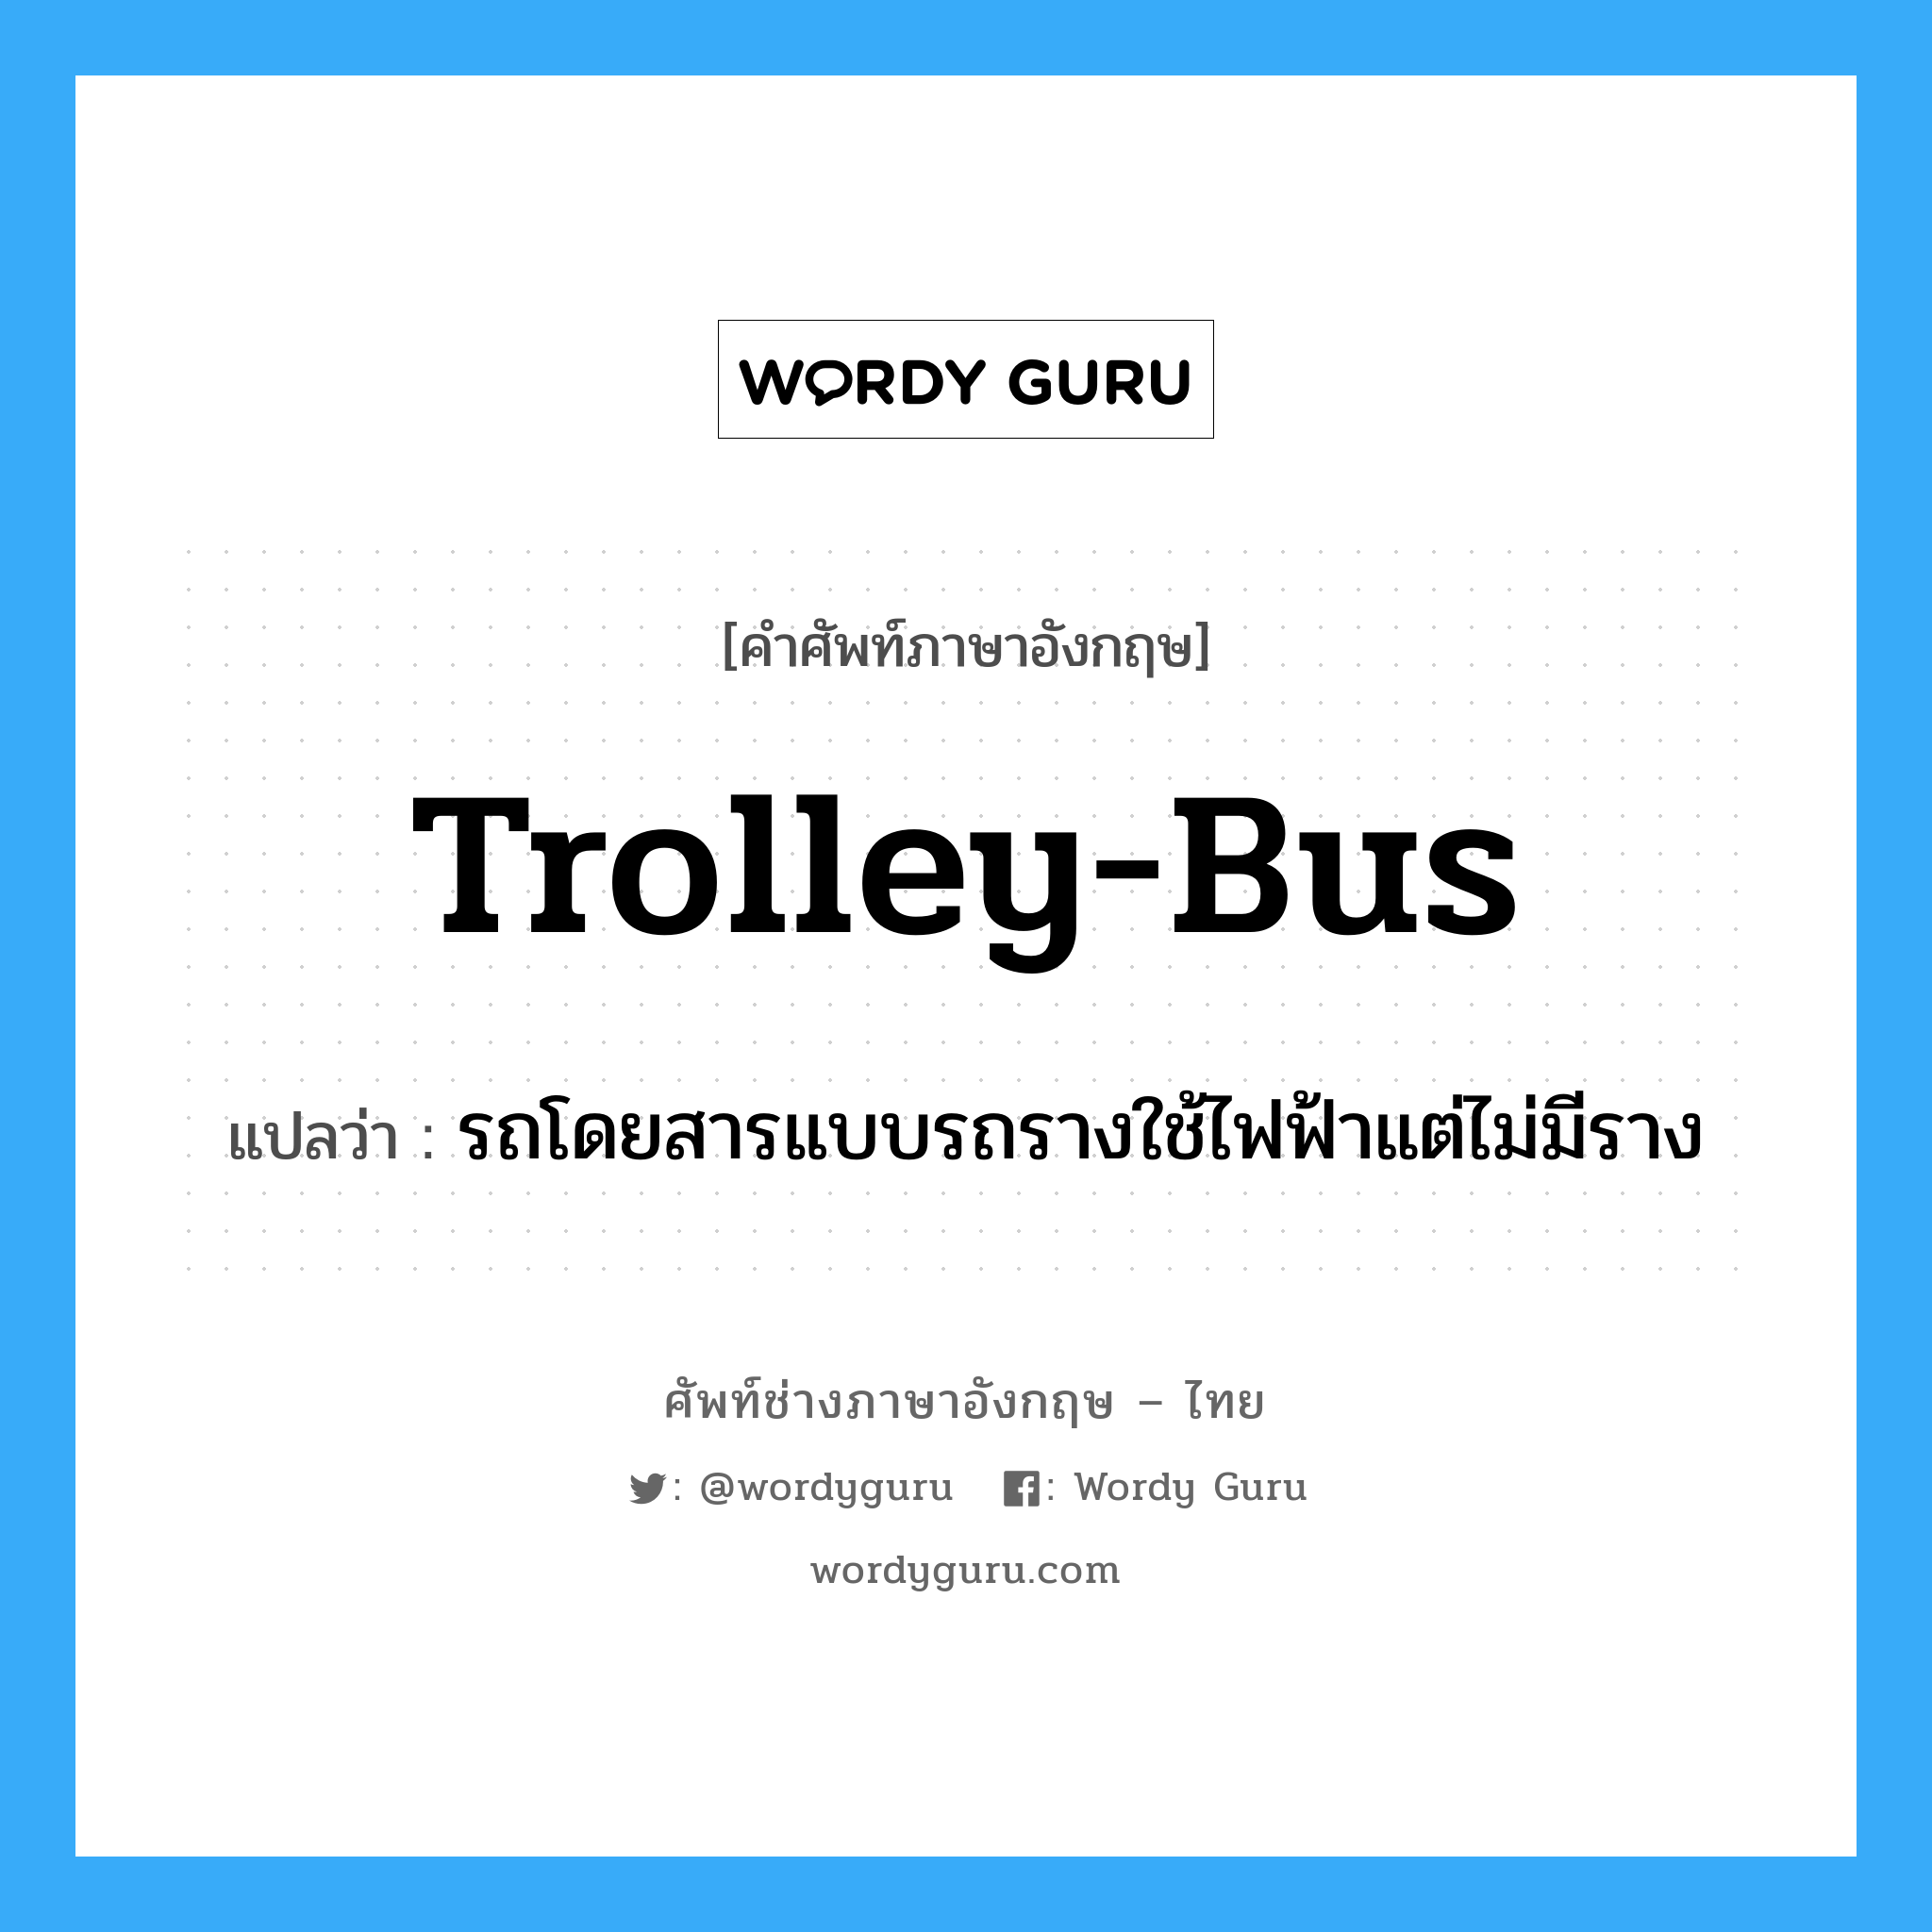 trolley-bus แปลว่า?, คำศัพท์ช่างภาษาอังกฤษ - ไทย trolley-bus คำศัพท์ภาษาอังกฤษ trolley-bus แปลว่า รถโดยสารแบบรถรางใช้ไฟฟ้าแต่ไม่มีราง